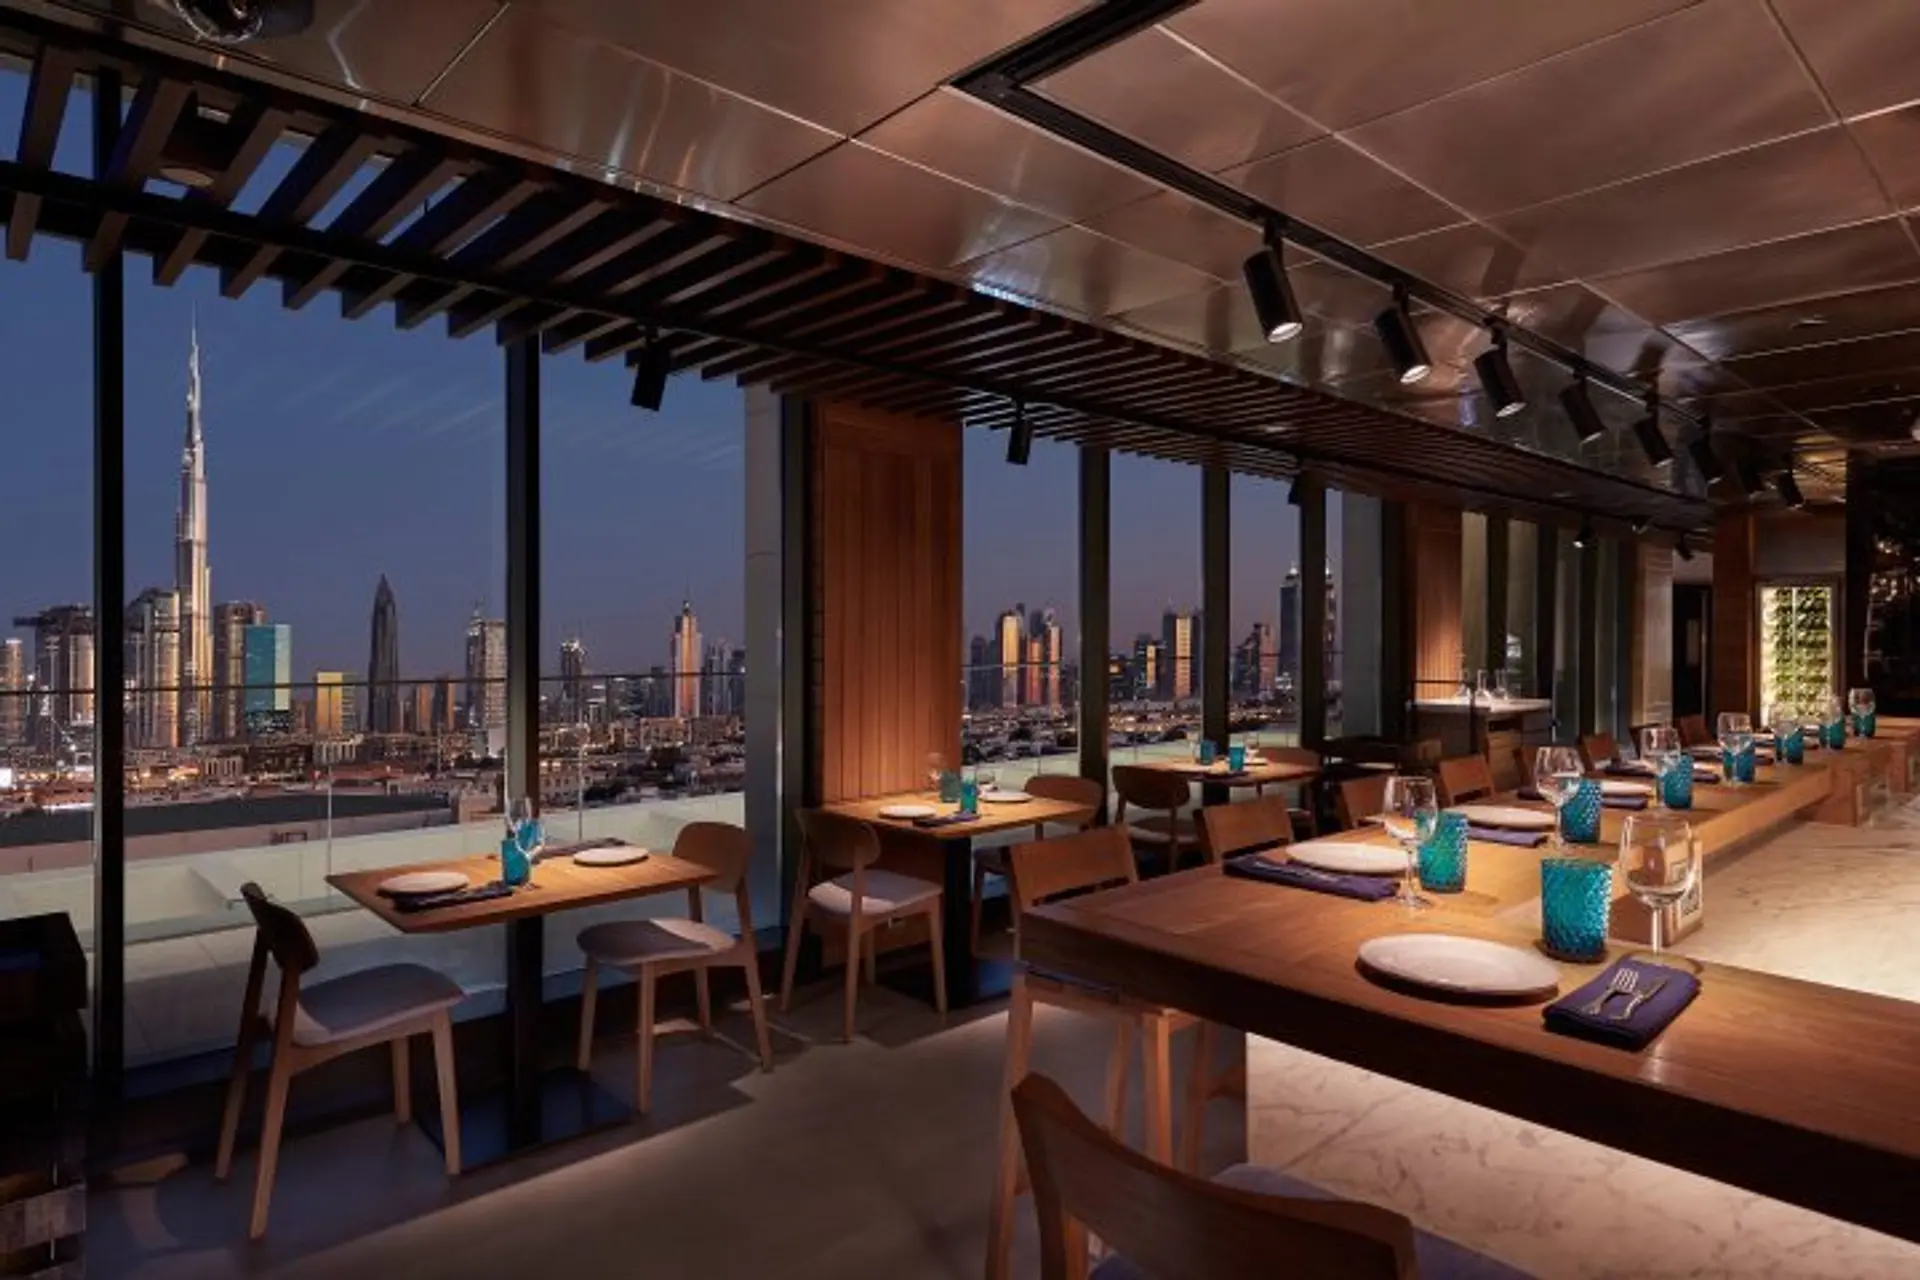 Hotels News - Mandarin Oriental opens elegant beachfront hotel in Dubai